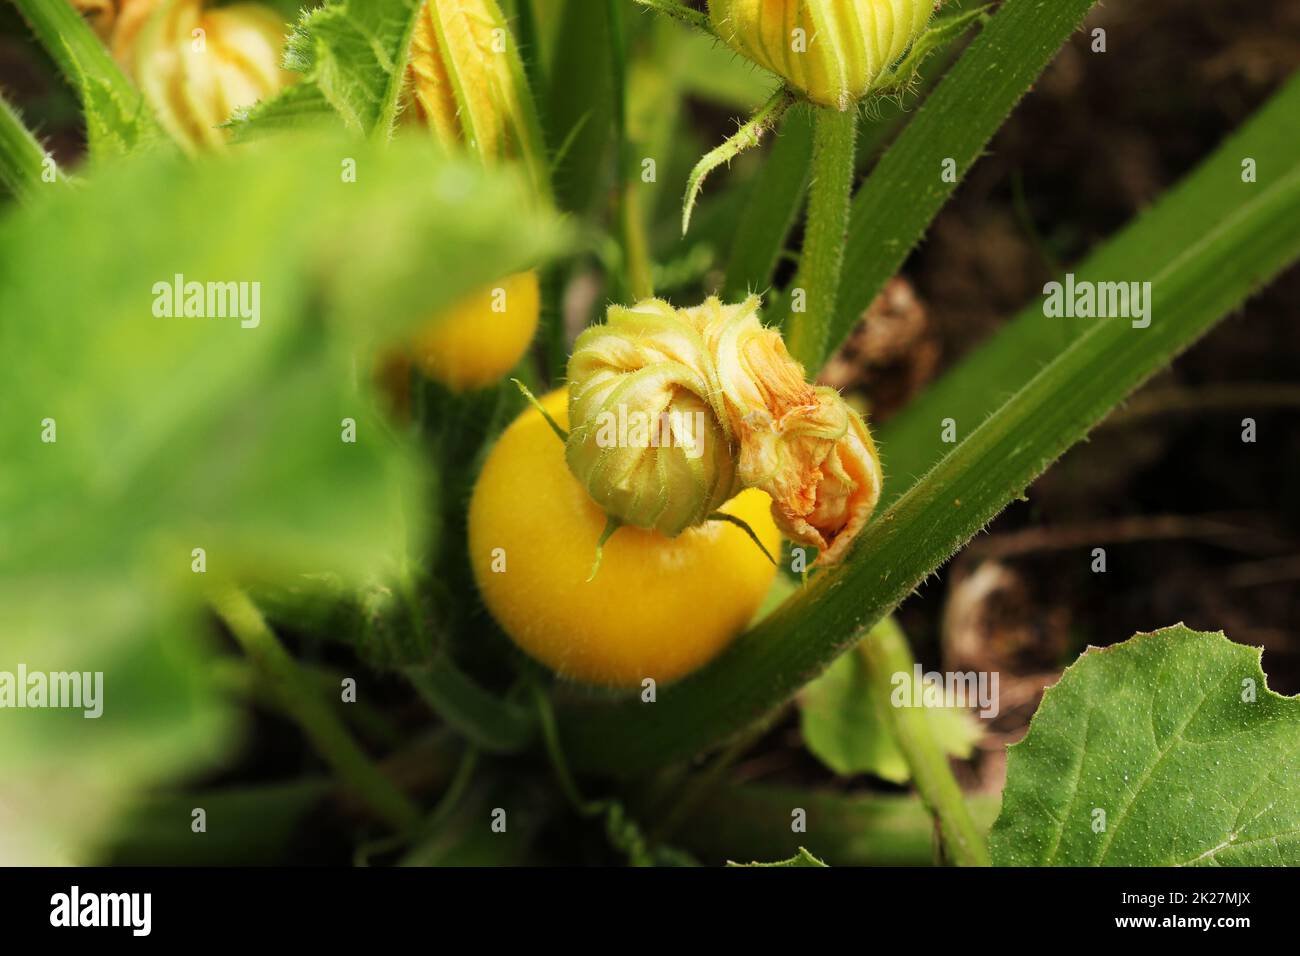 Calabacín amarillo redondo con hojas verdes y flores amarillas que crecen en el jardín Foto de stock